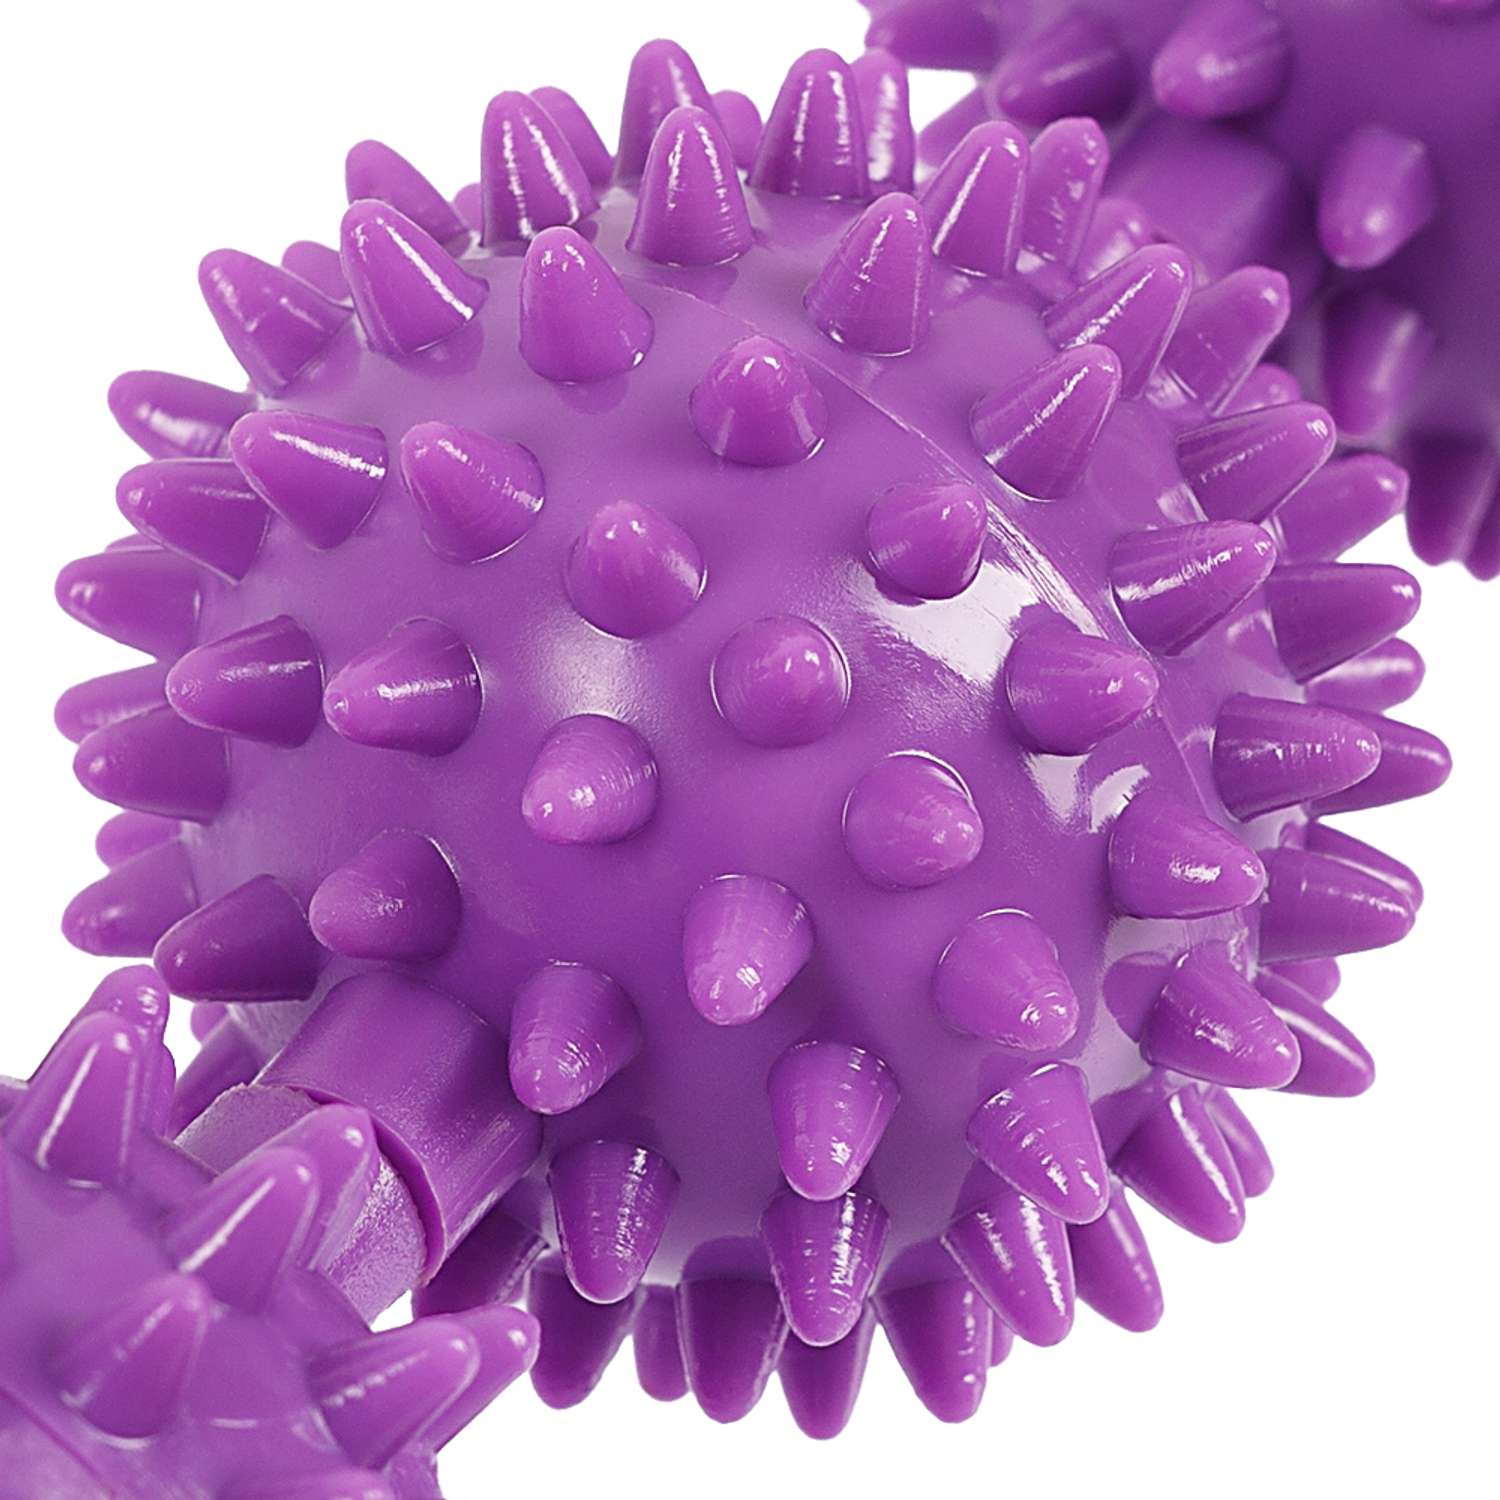 Массажёр ручной механический STRONG BODY МФР 5 массажных мячей на палке фиолетовый - фото 5